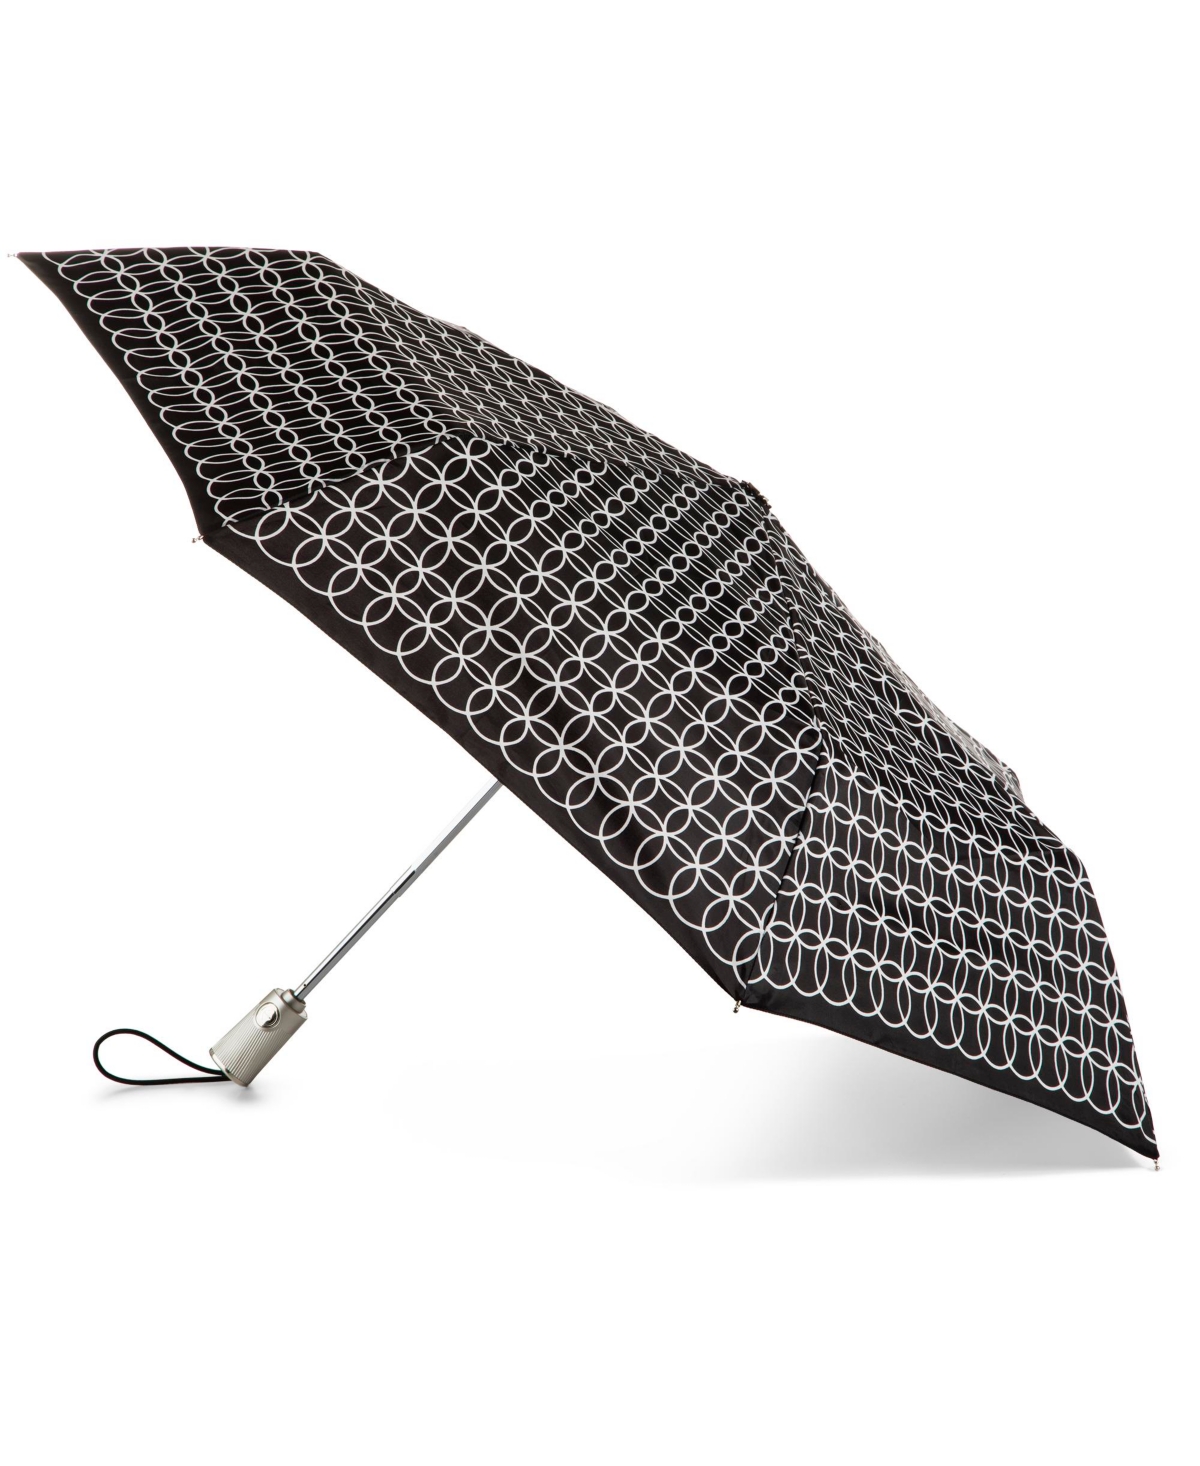 Water Repellent Auto Open Close Folding Umbrella with Sunguard - Black